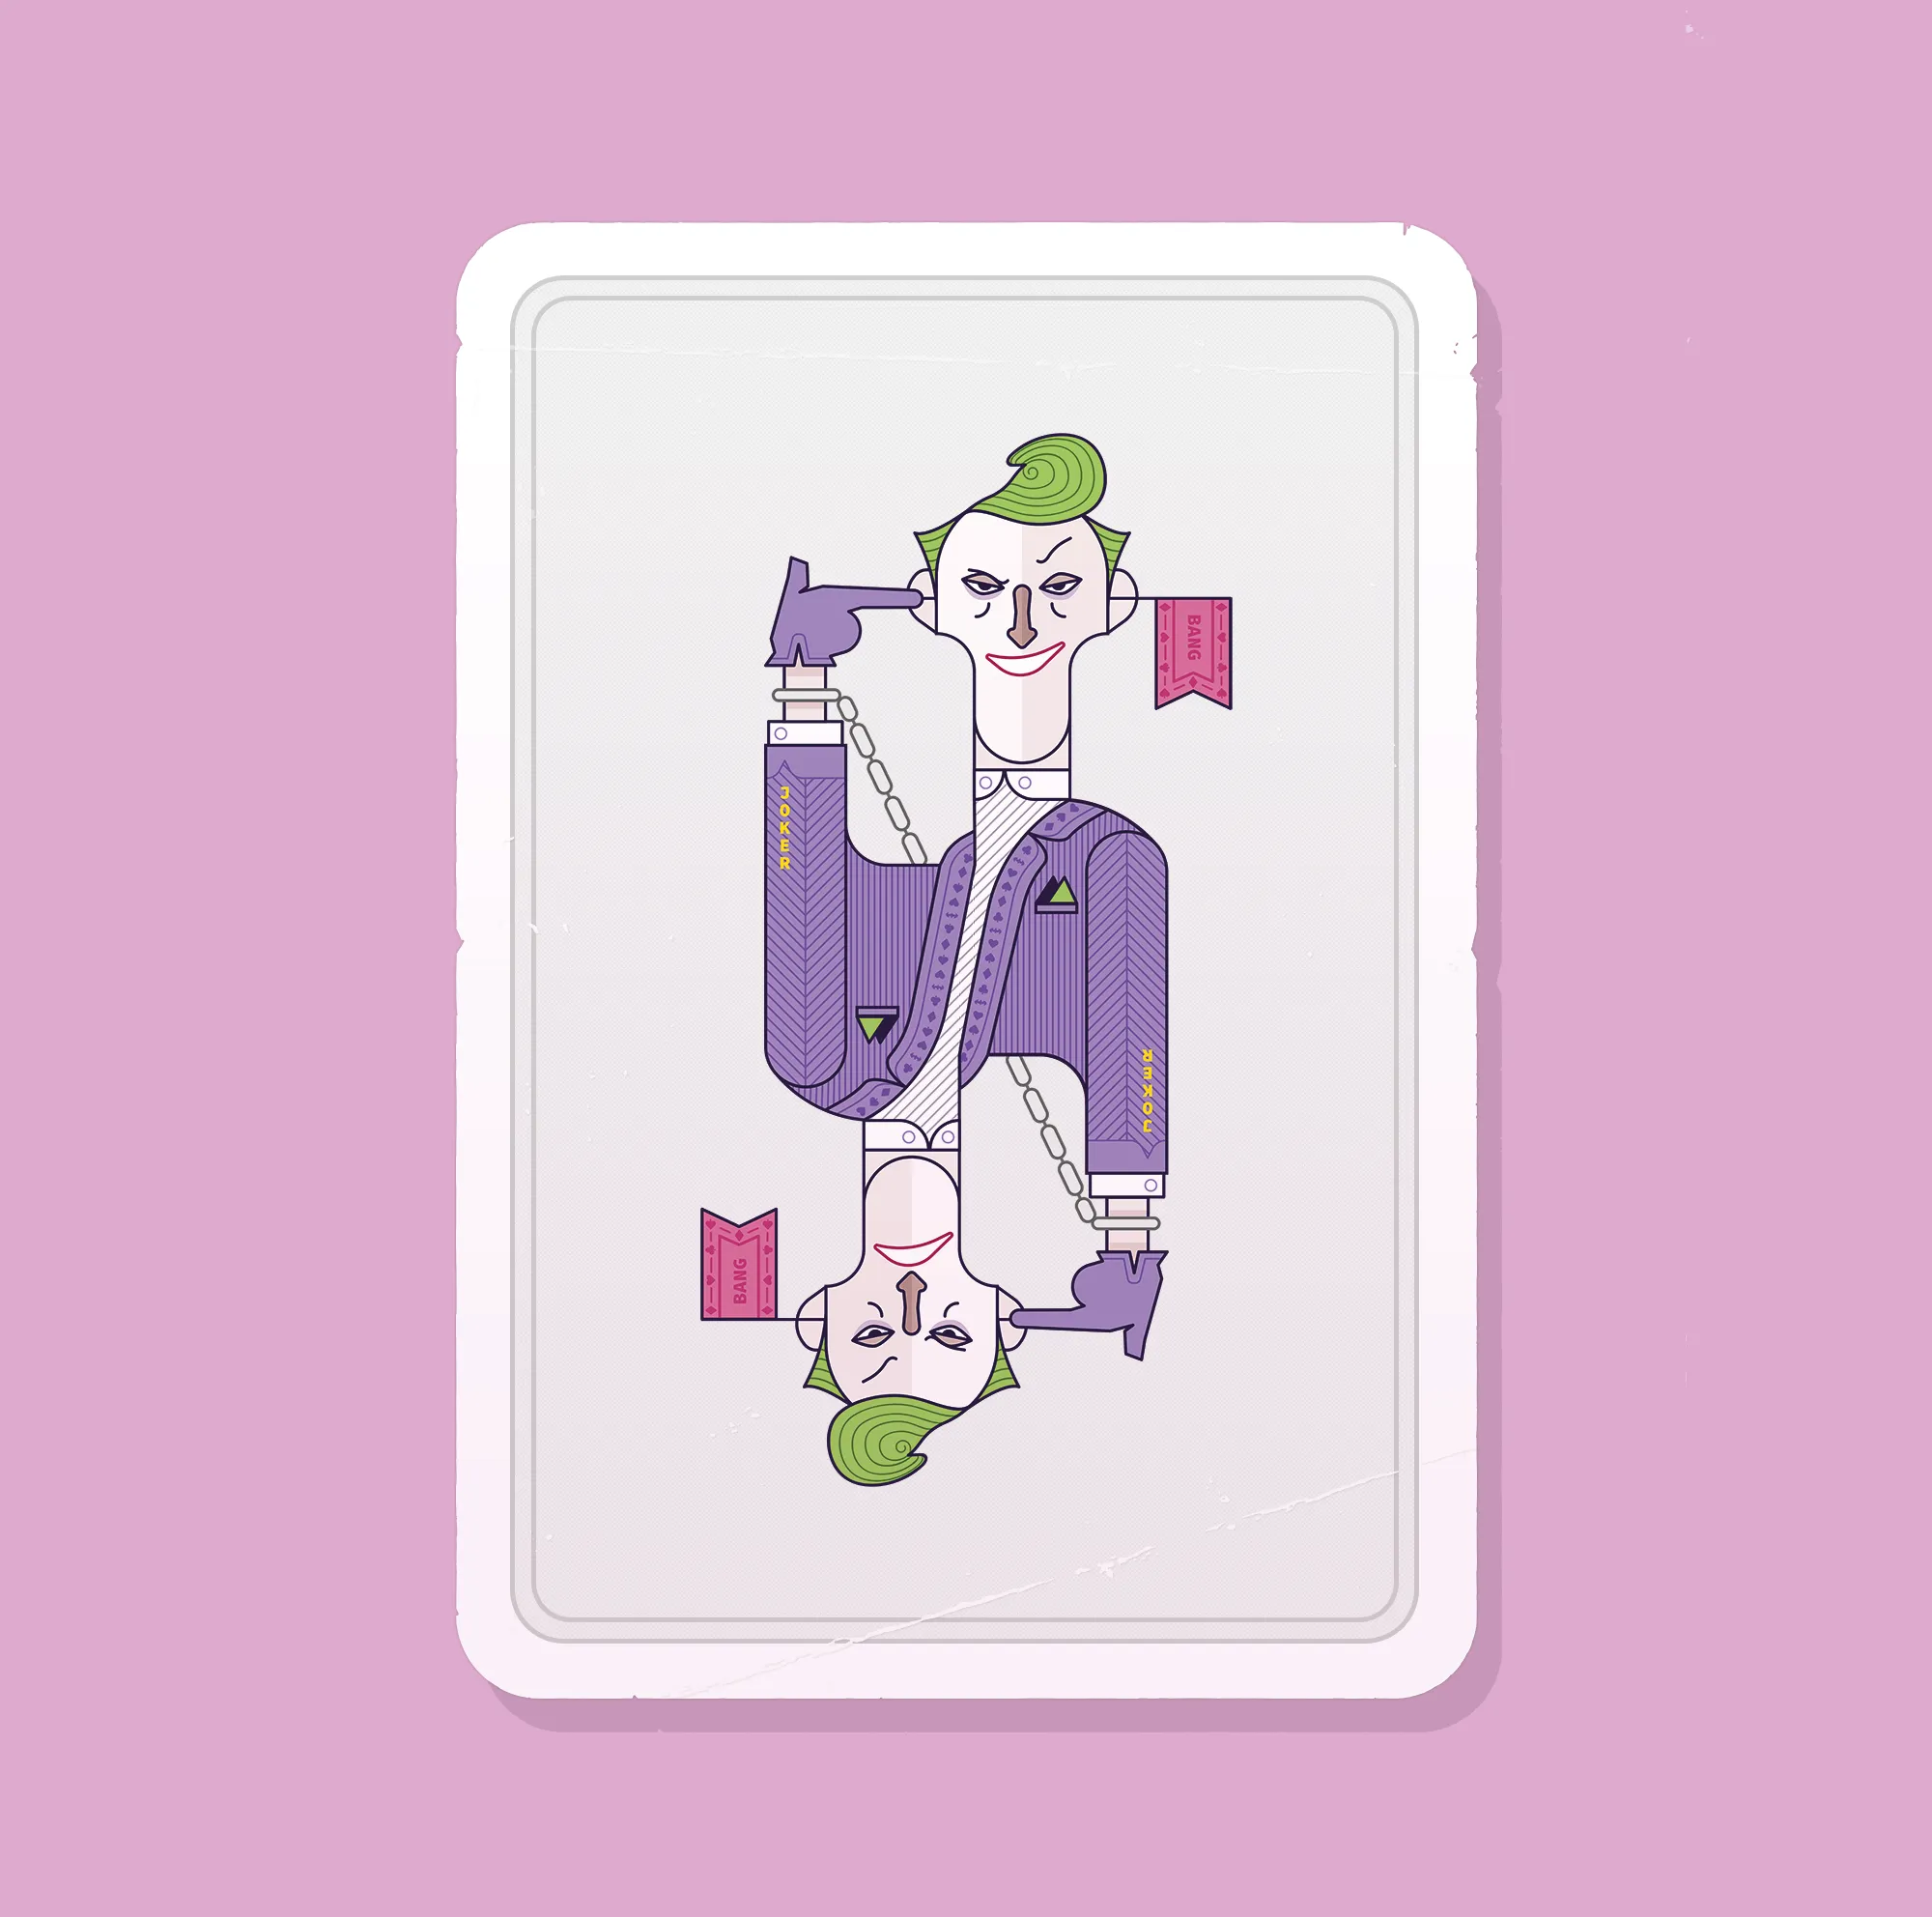 A custom designed 'Joker' card, featuring the Joker character from Batman, 